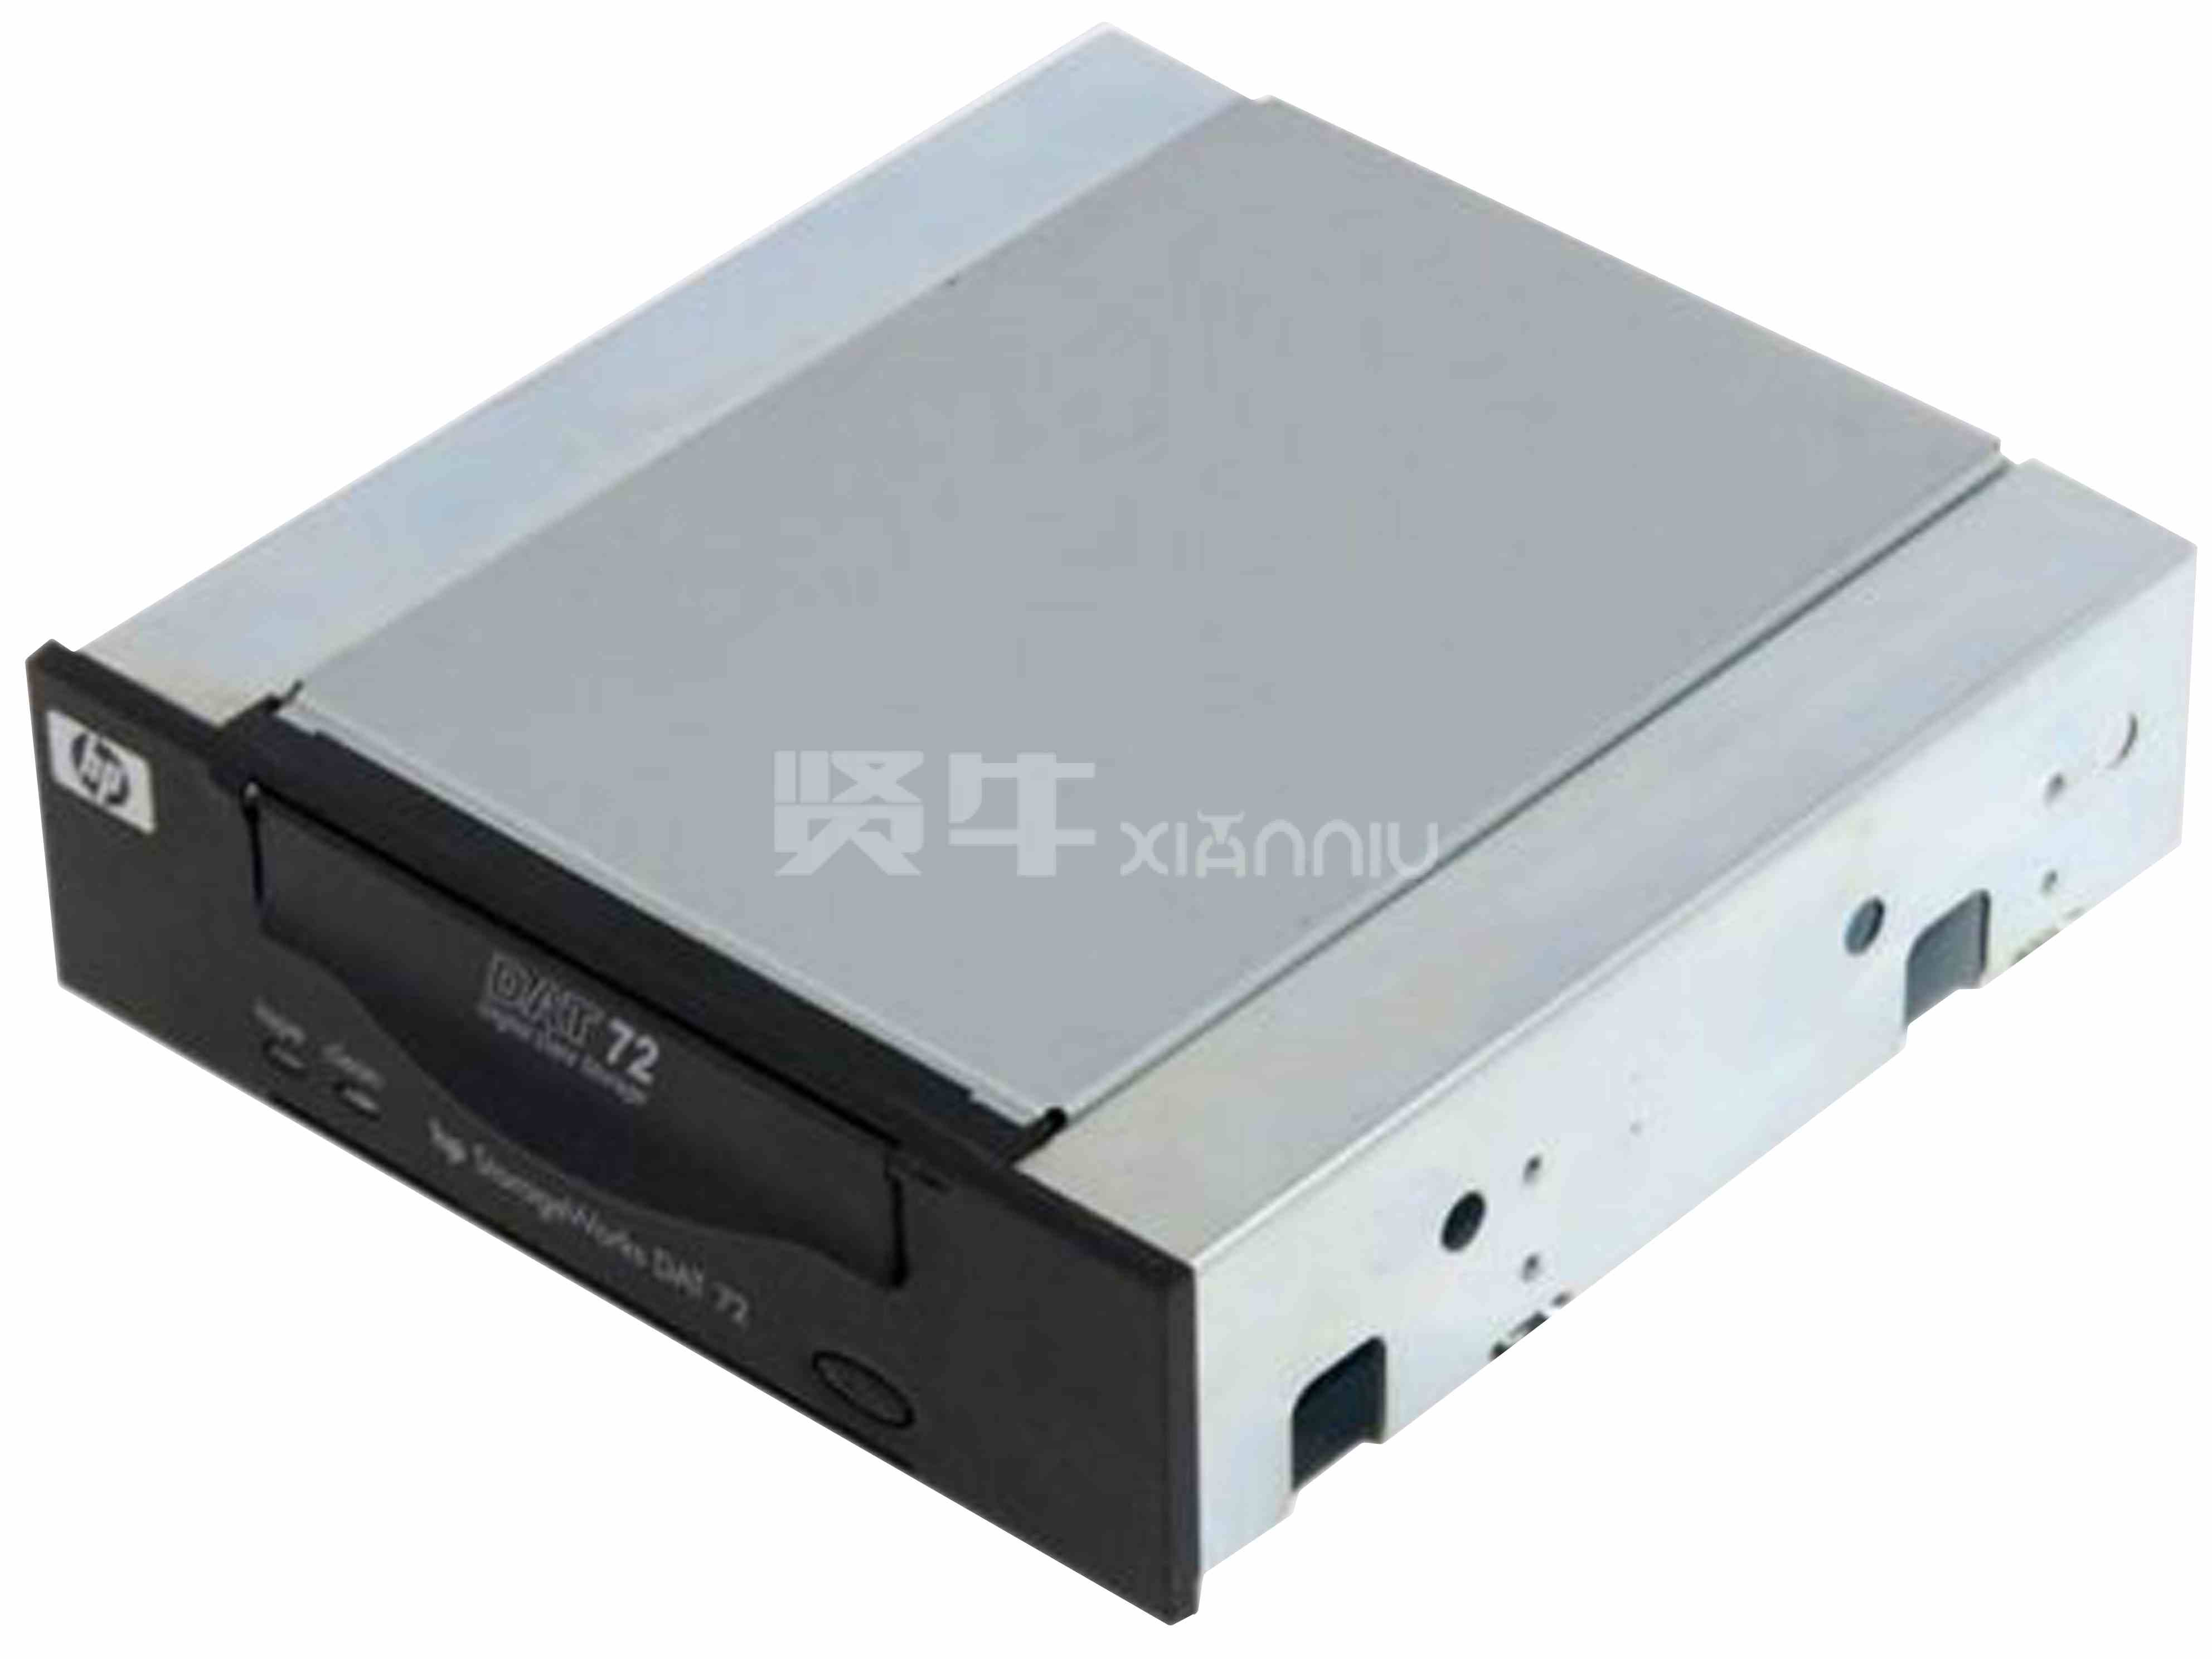 HP DAT72 DDS5 SCSI Q1522A